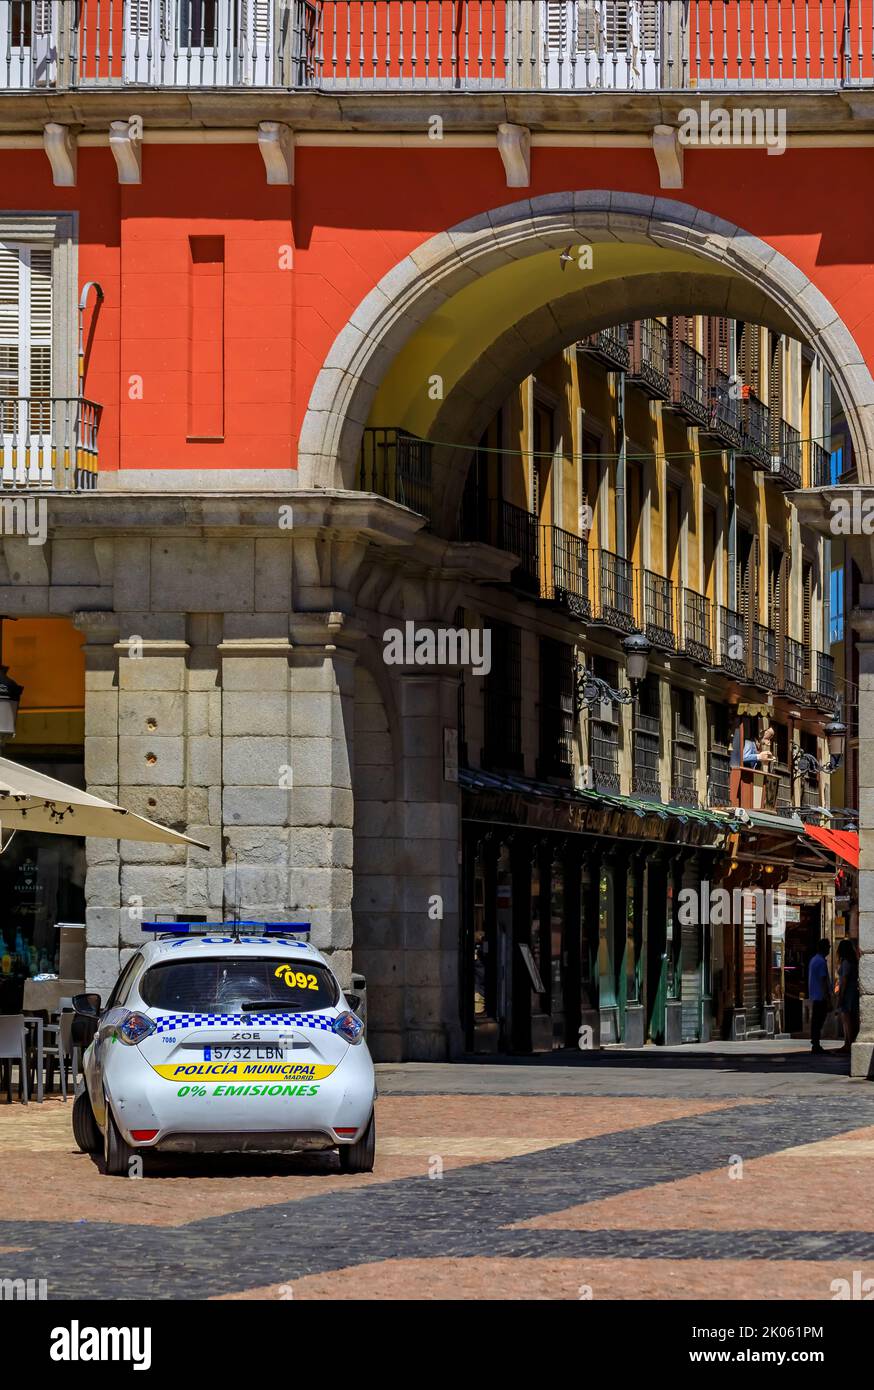 Madrid, Espagne - 28 juin 2021: Voiture de police municipale, Renault Zoe électrique sur la place Mayor patrouillent la zone, en conduisant sur la rue pavée Banque D'Images